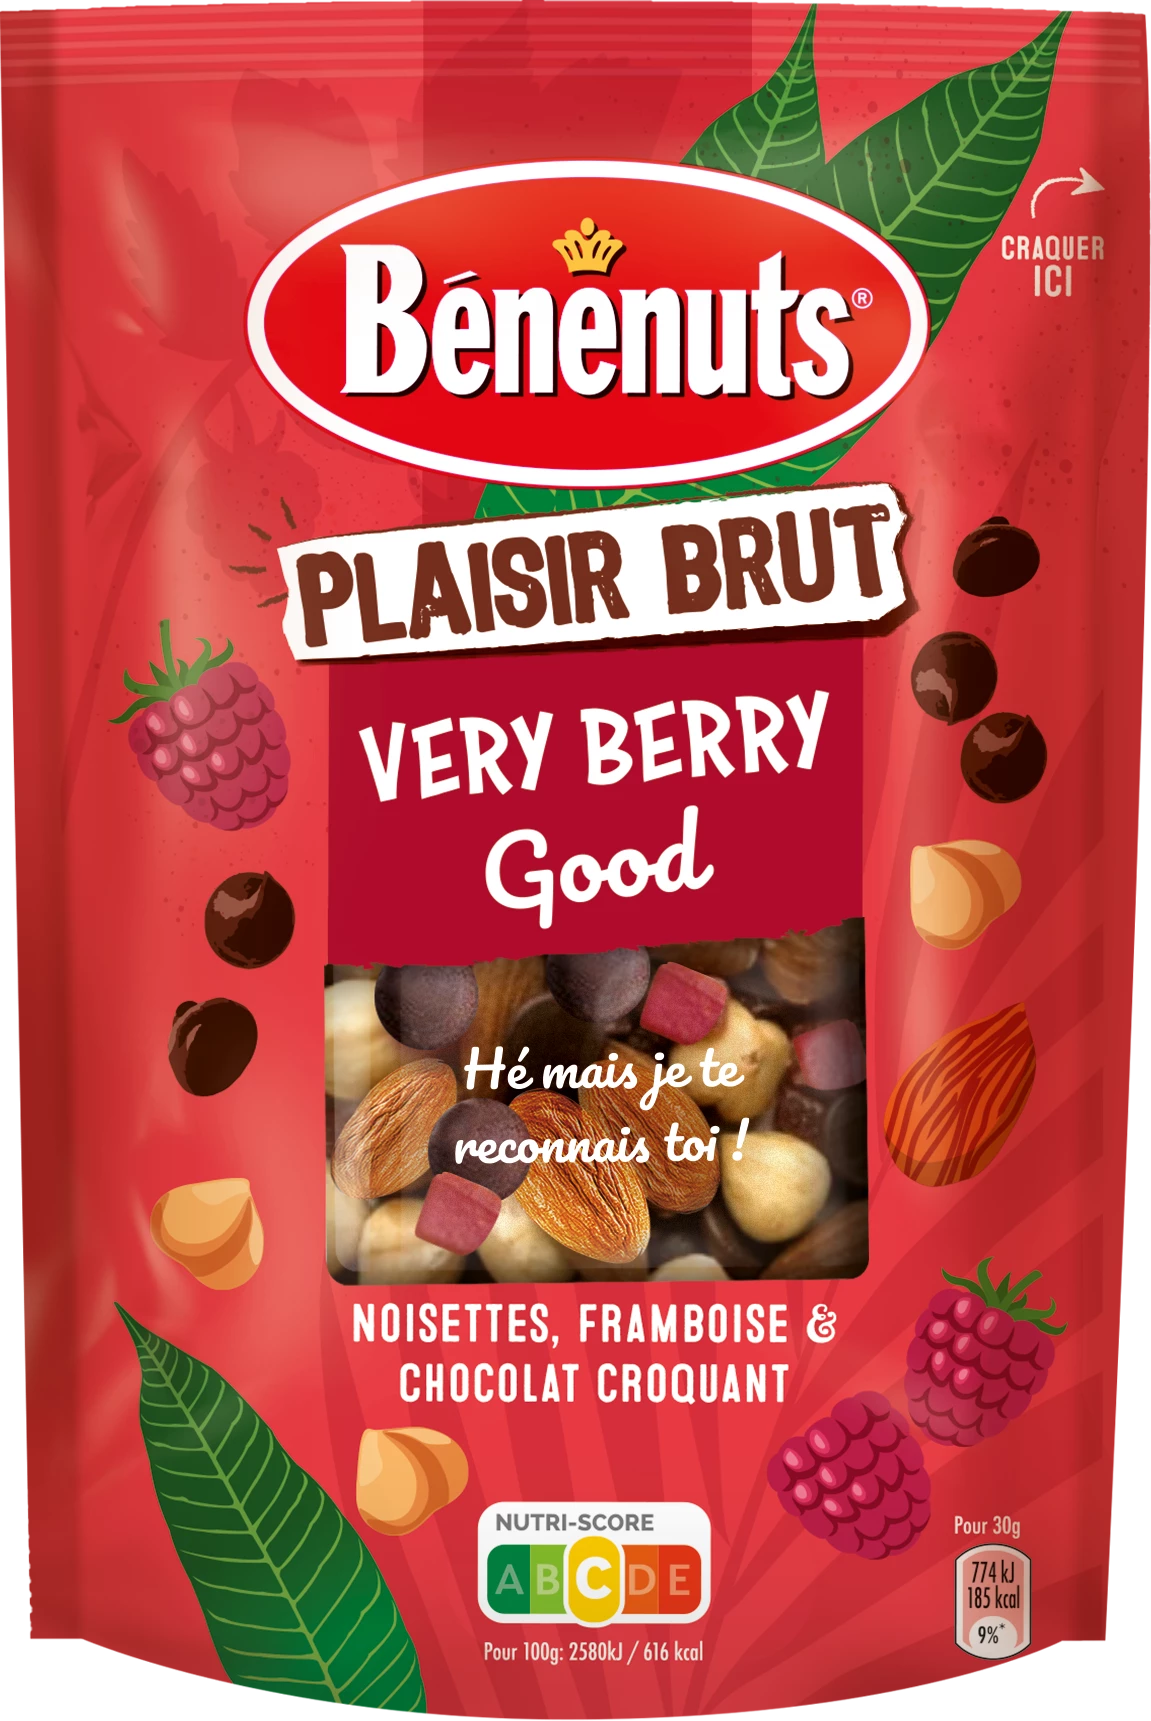 Seed Mix Almonds Hazelnuts Raspberry Chips & ChocoLat, 120g - BENENUTS